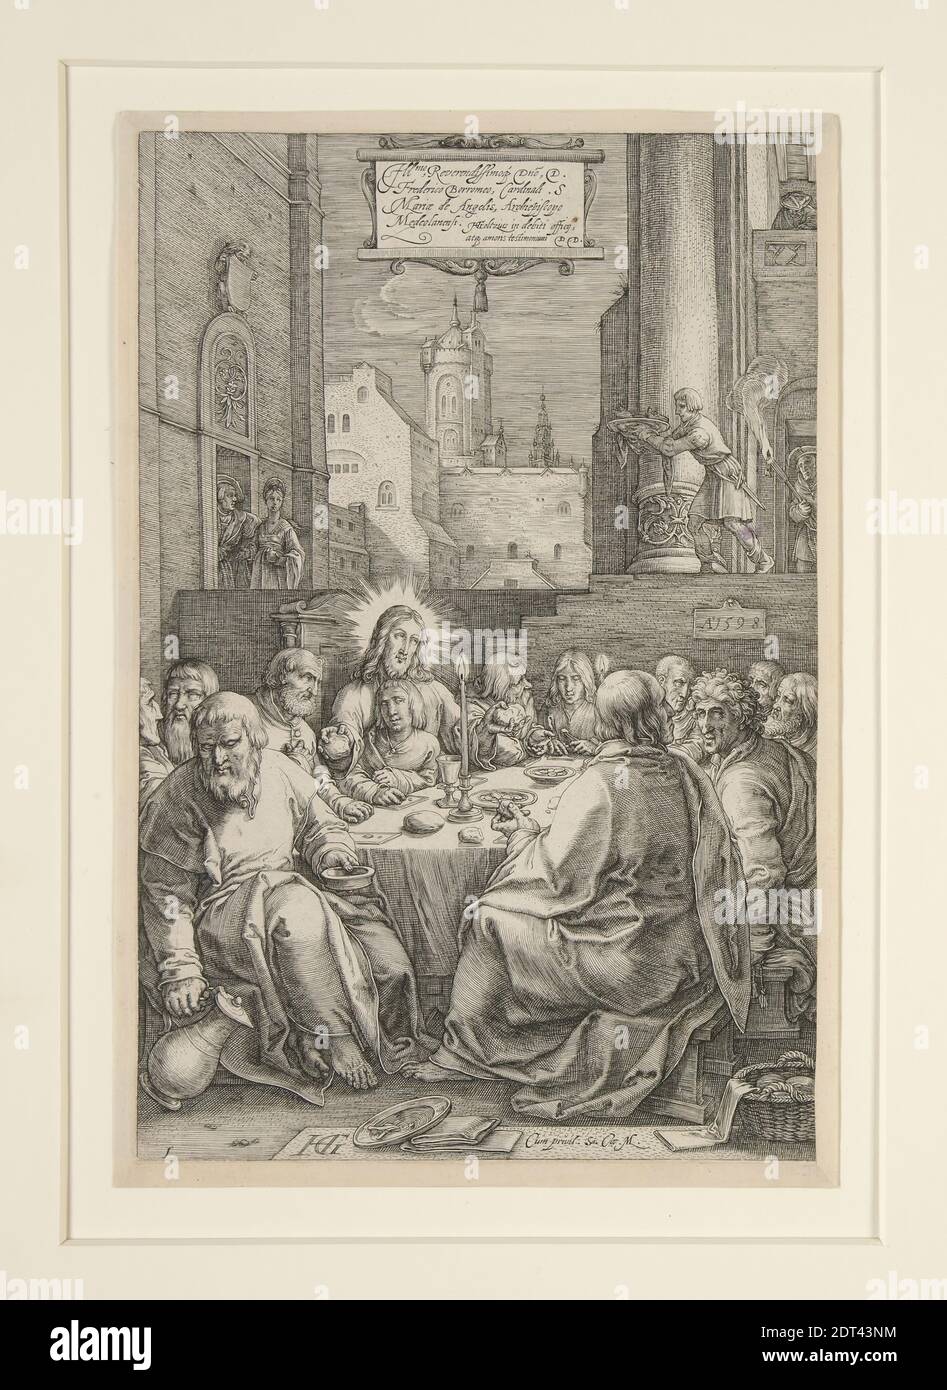 Artista: Hendrick Goltzius, olandese, 1558–1617, ultima cena, dalla Passione, n° 1 in una serie di 12 incisioni, incisione, 19.9 × 13.3 cm (7 13/16 × 5 1/4 in.), Made in the Netherlands, Dutch, XVI secolo, opere su carta - stampe Foto Stock